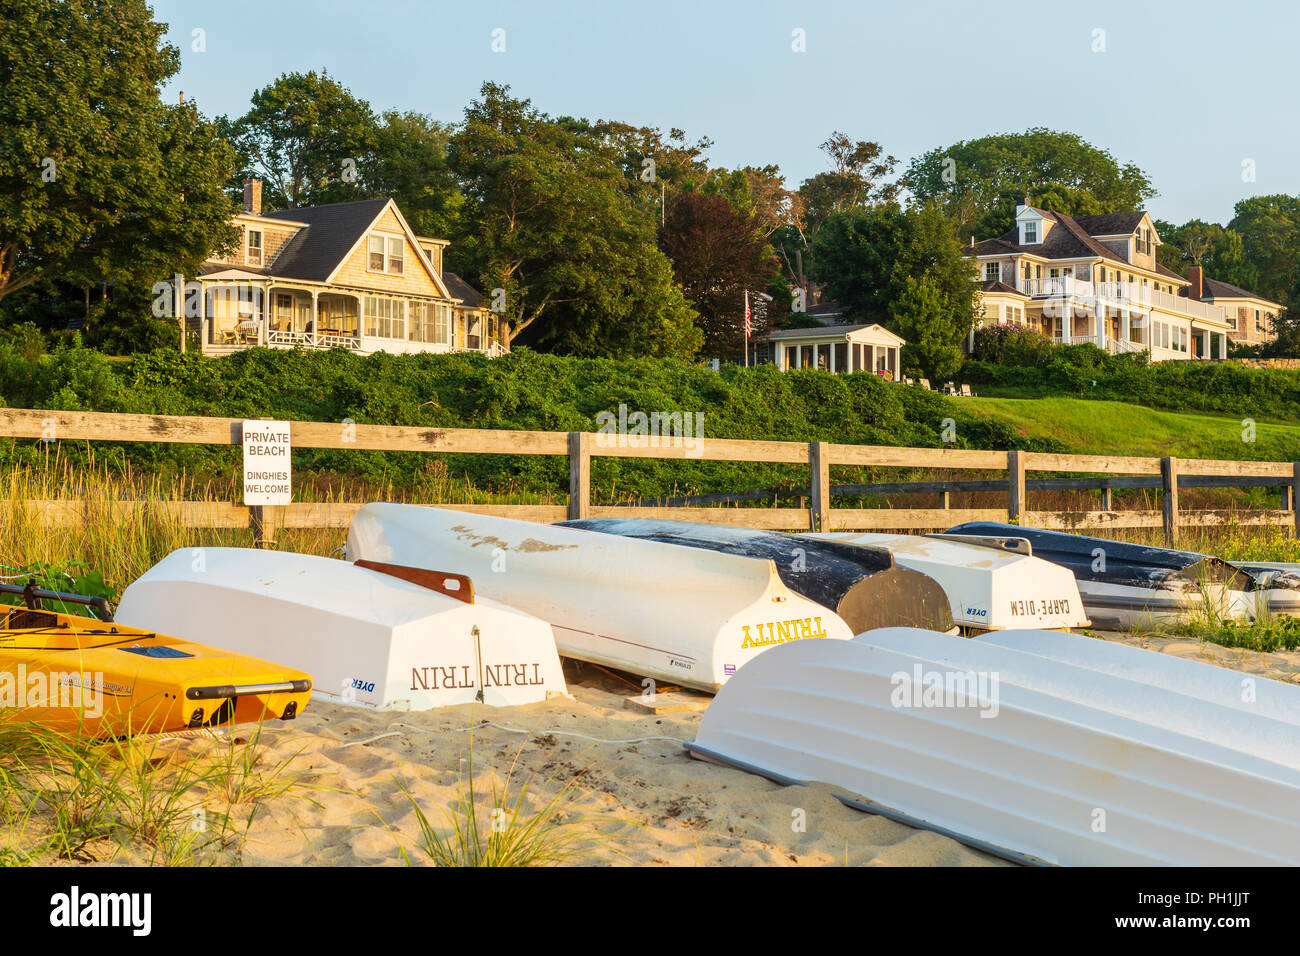 Los botes se alinearon en una playa privada cerca de Owen Park Beach en Vineyard Haven (Tisbury), Massachusetts en Martha's Vineyard. Foto de stock